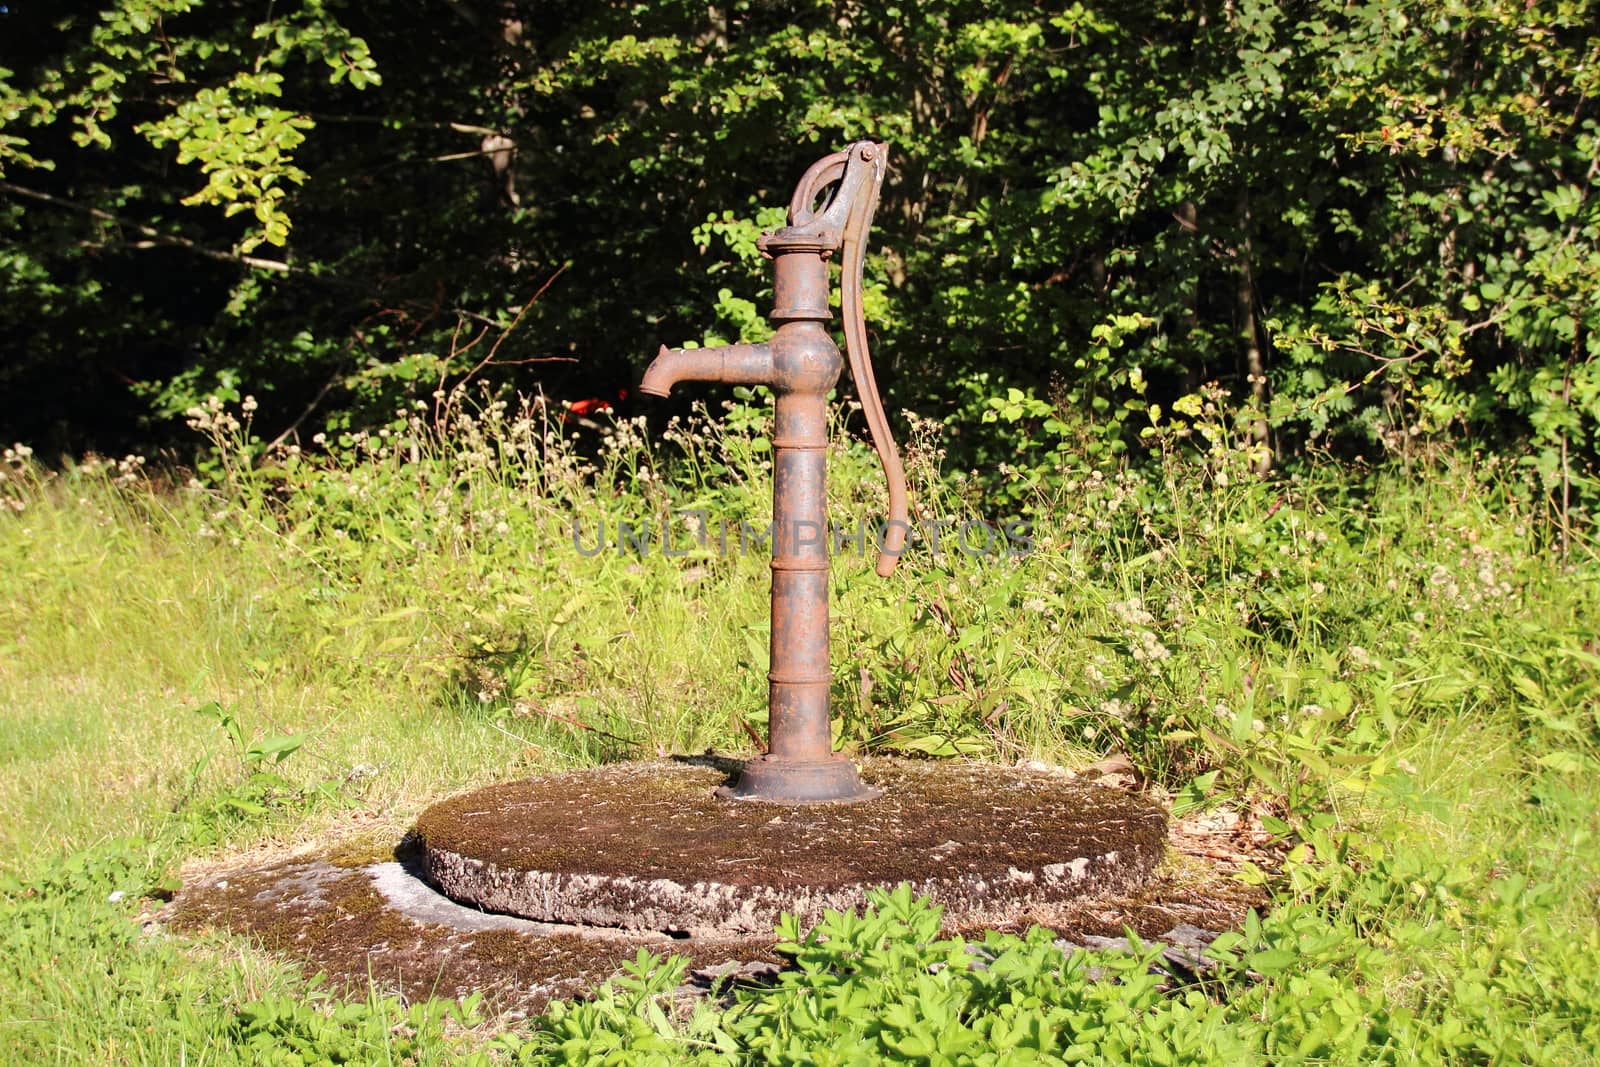 Old grunge water pump in forest garden